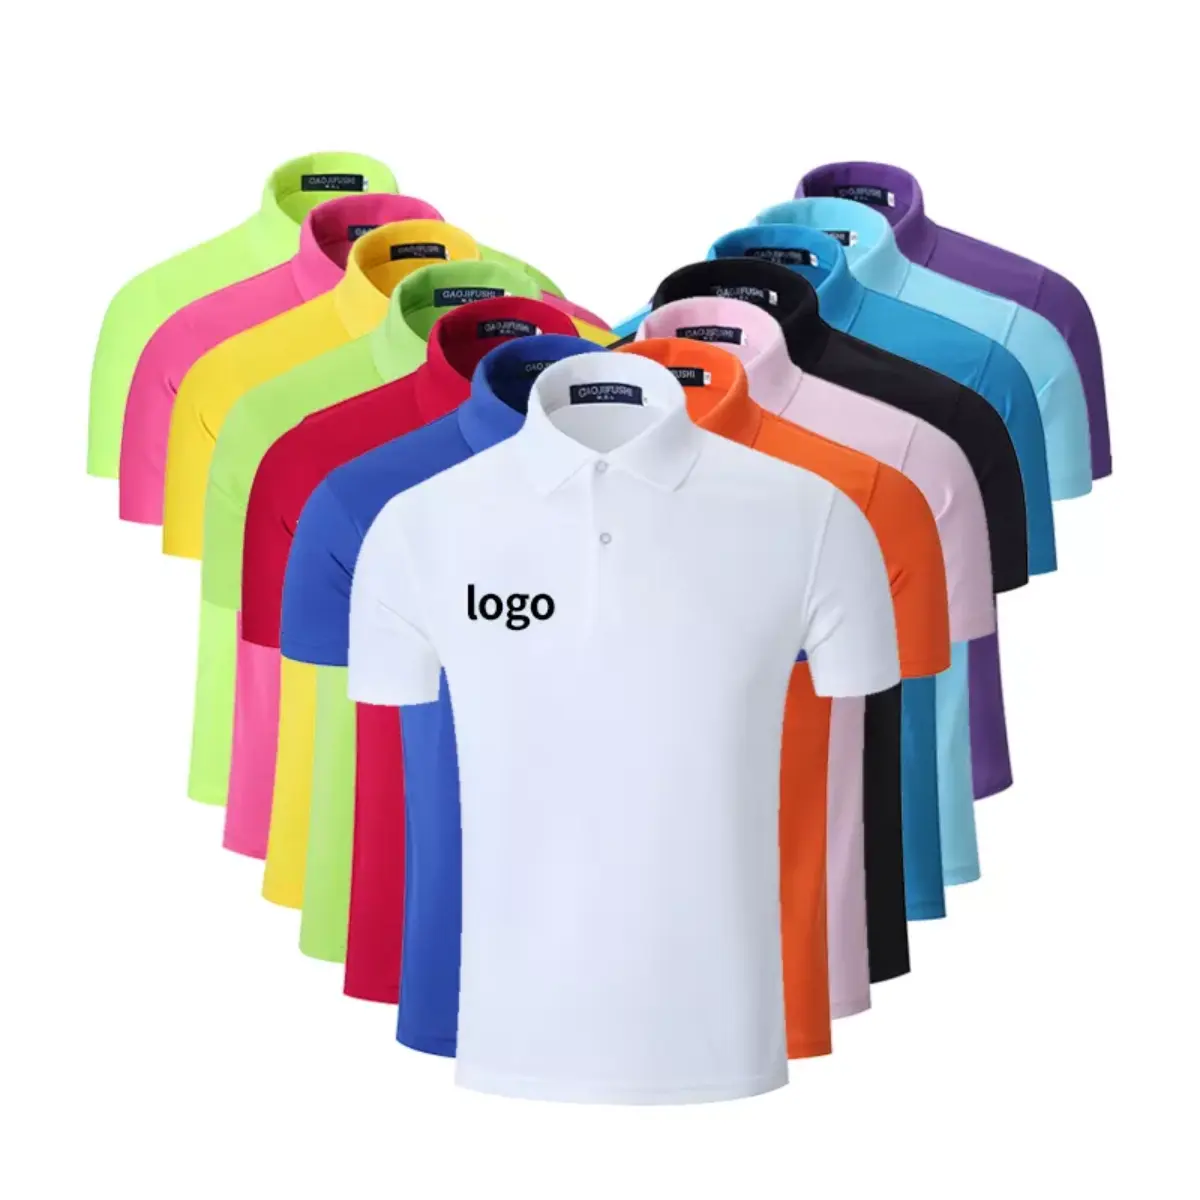 Verkaufs förderung Benutzer definiertes Logo einfarbig schlichte leere Pique-Polyester-Stickerei Gewaschenes T-Shirt Baumwoll-T-Shirts Herren-Polos hirts